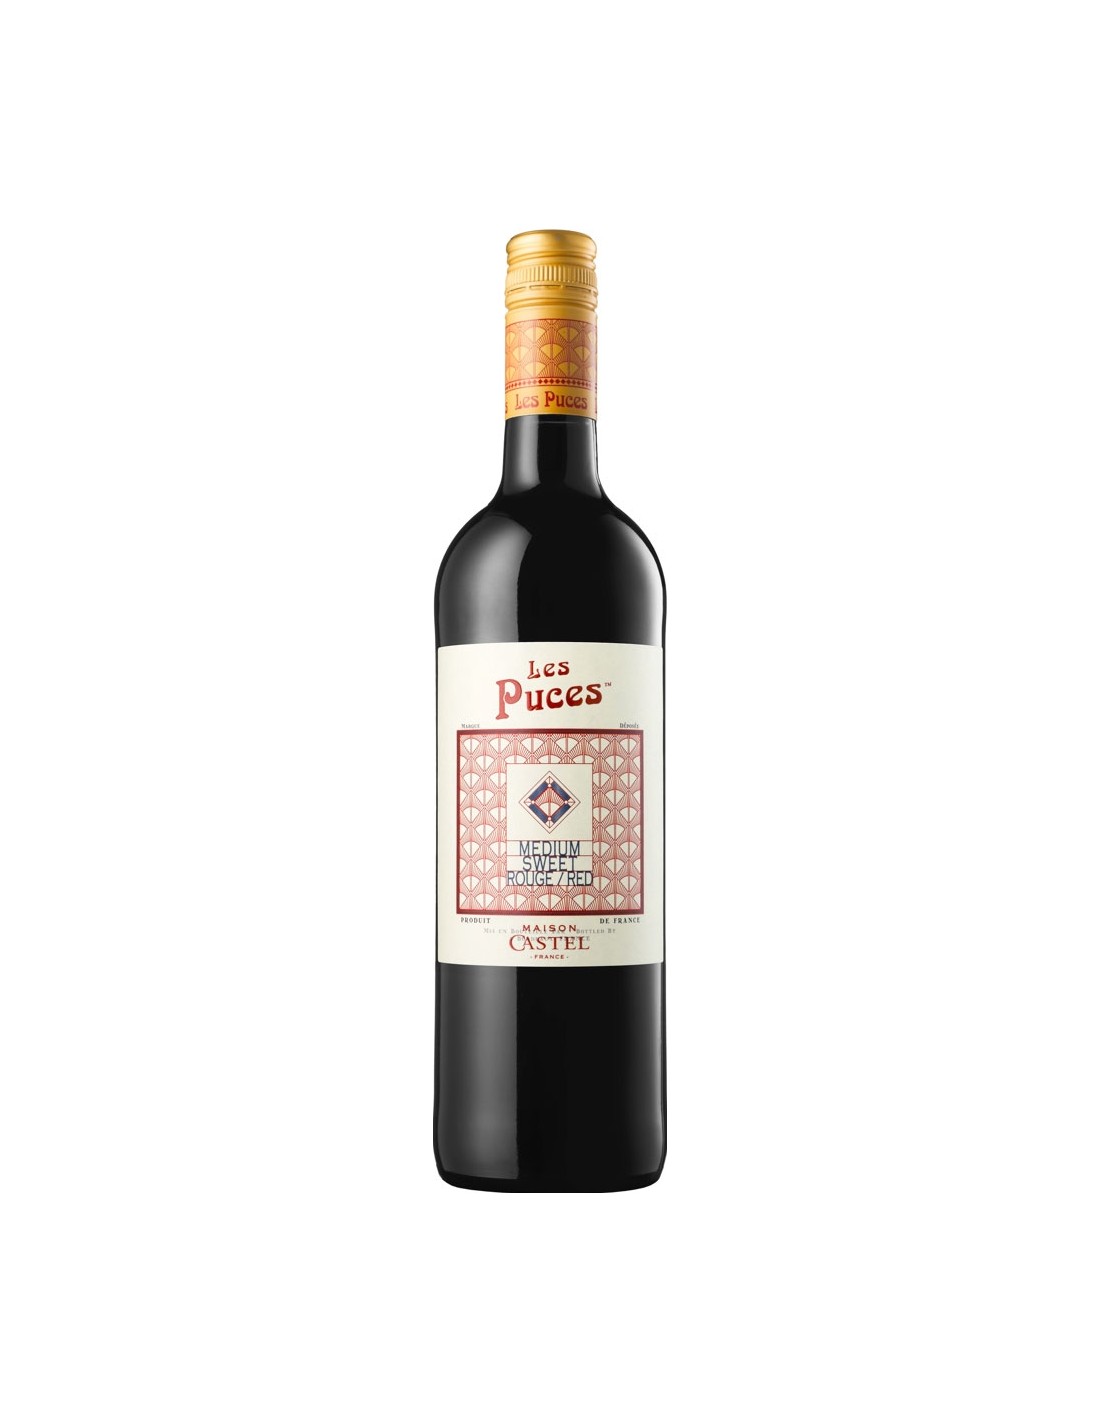 Vin rosu demidulce, Grenache, Les Puces Maison Castel, 0.75L, 11.5% alc., Franta alcooldiscount.ro